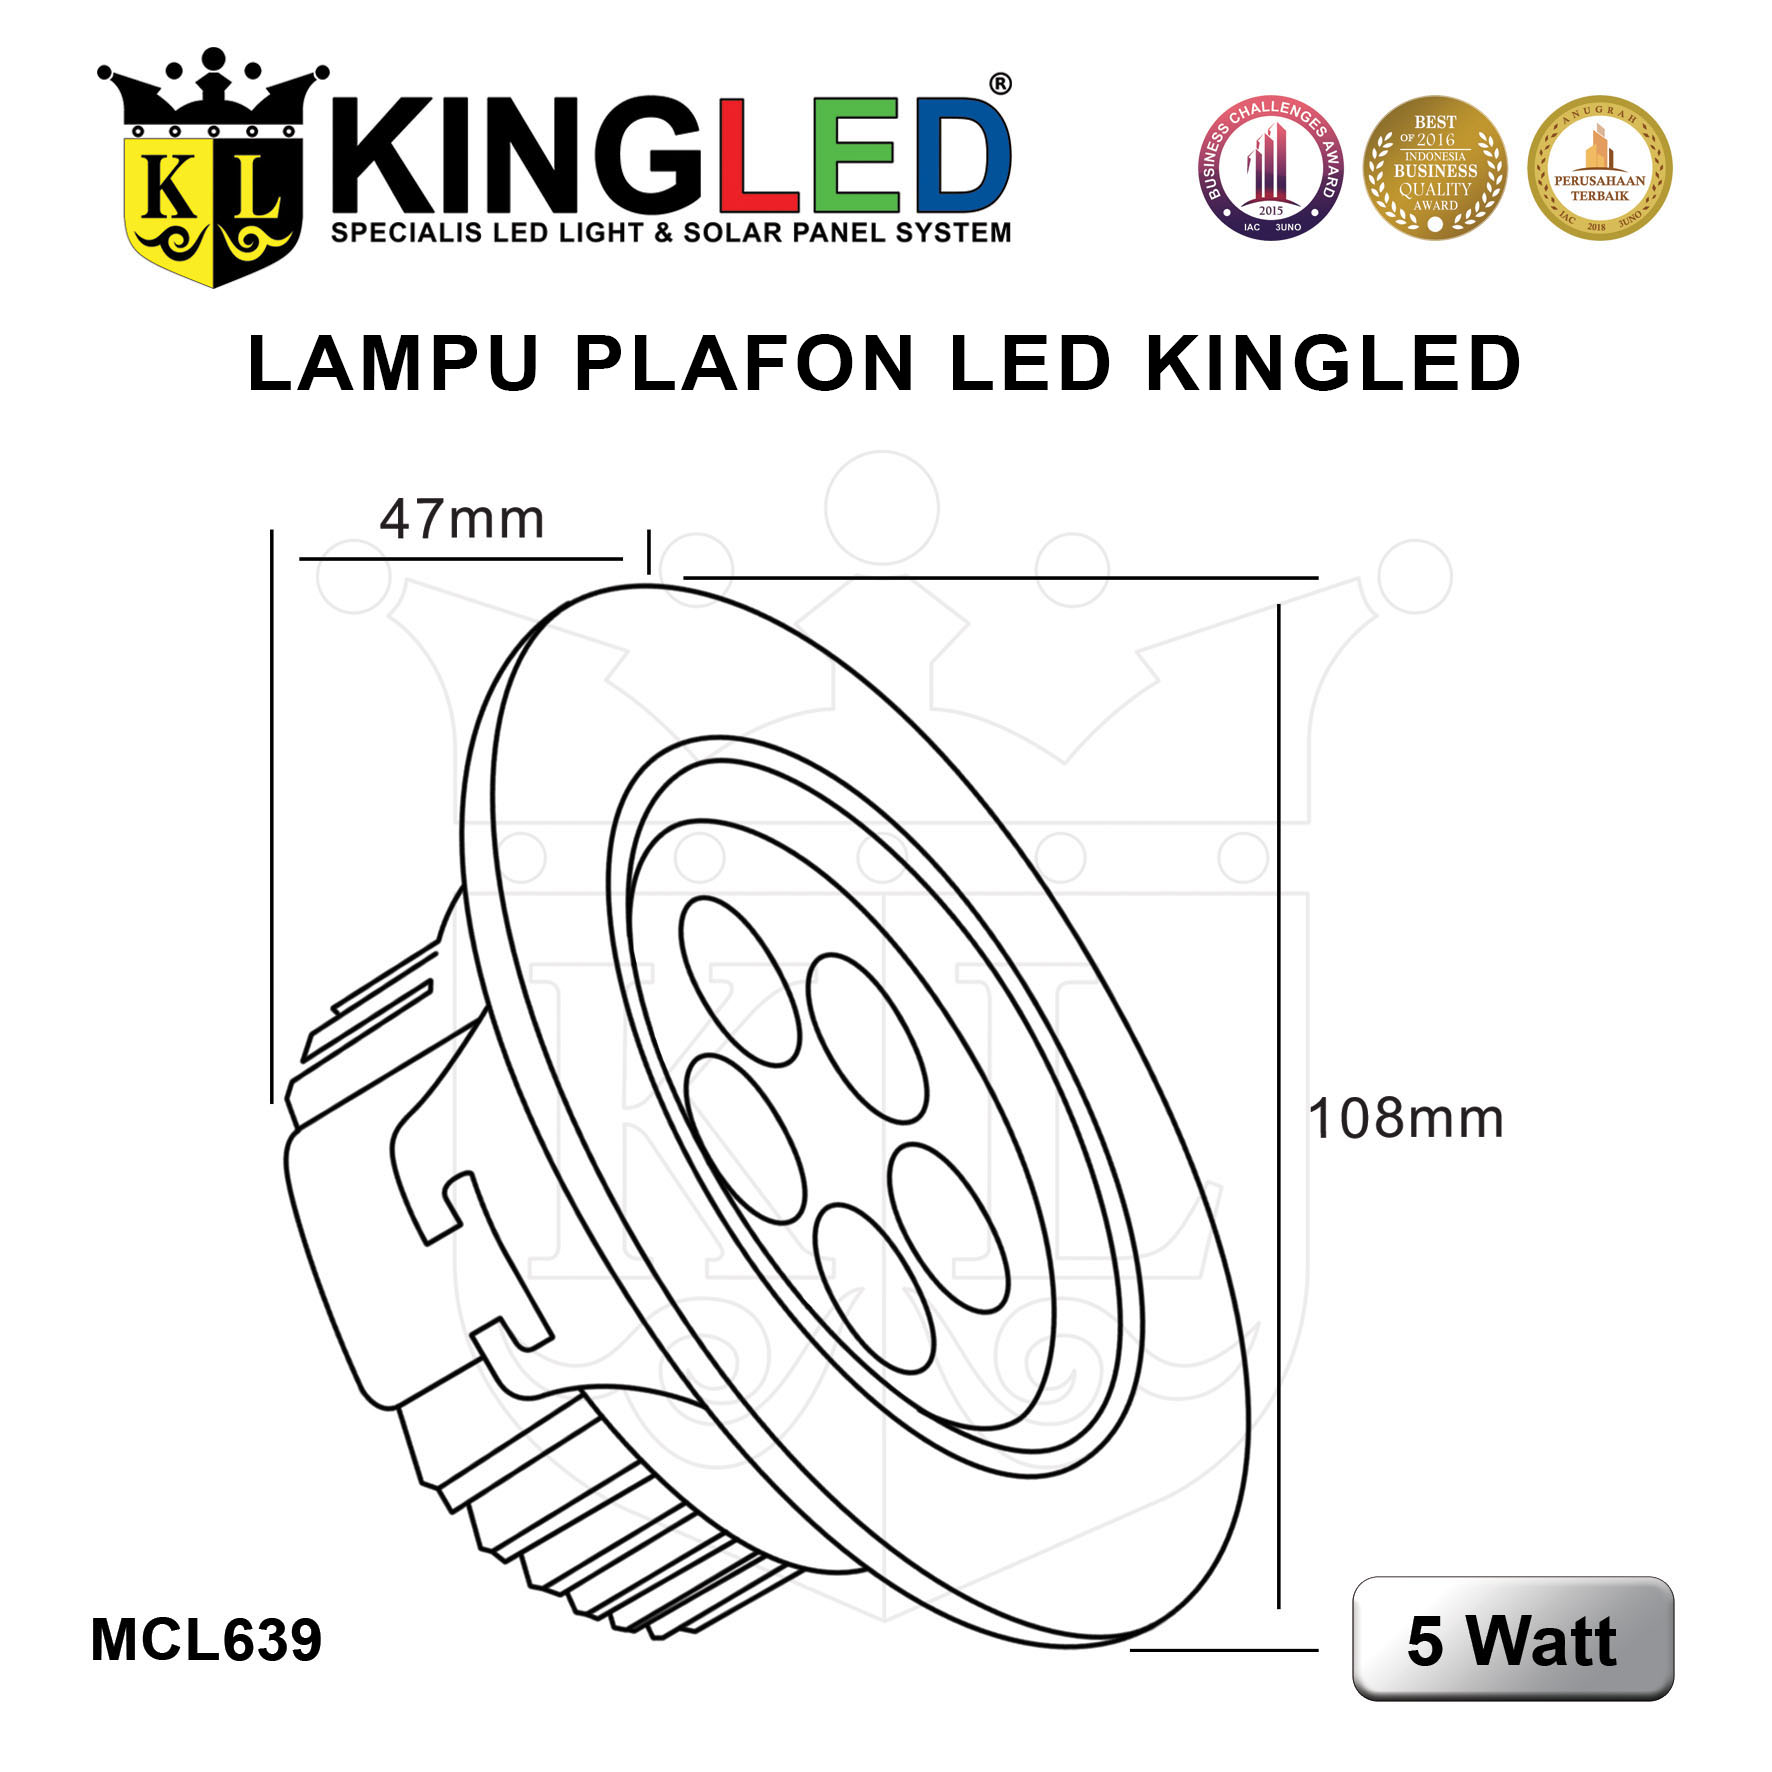 Lampu Plafon LED 5 Watt / LED DownLight 5 Watt